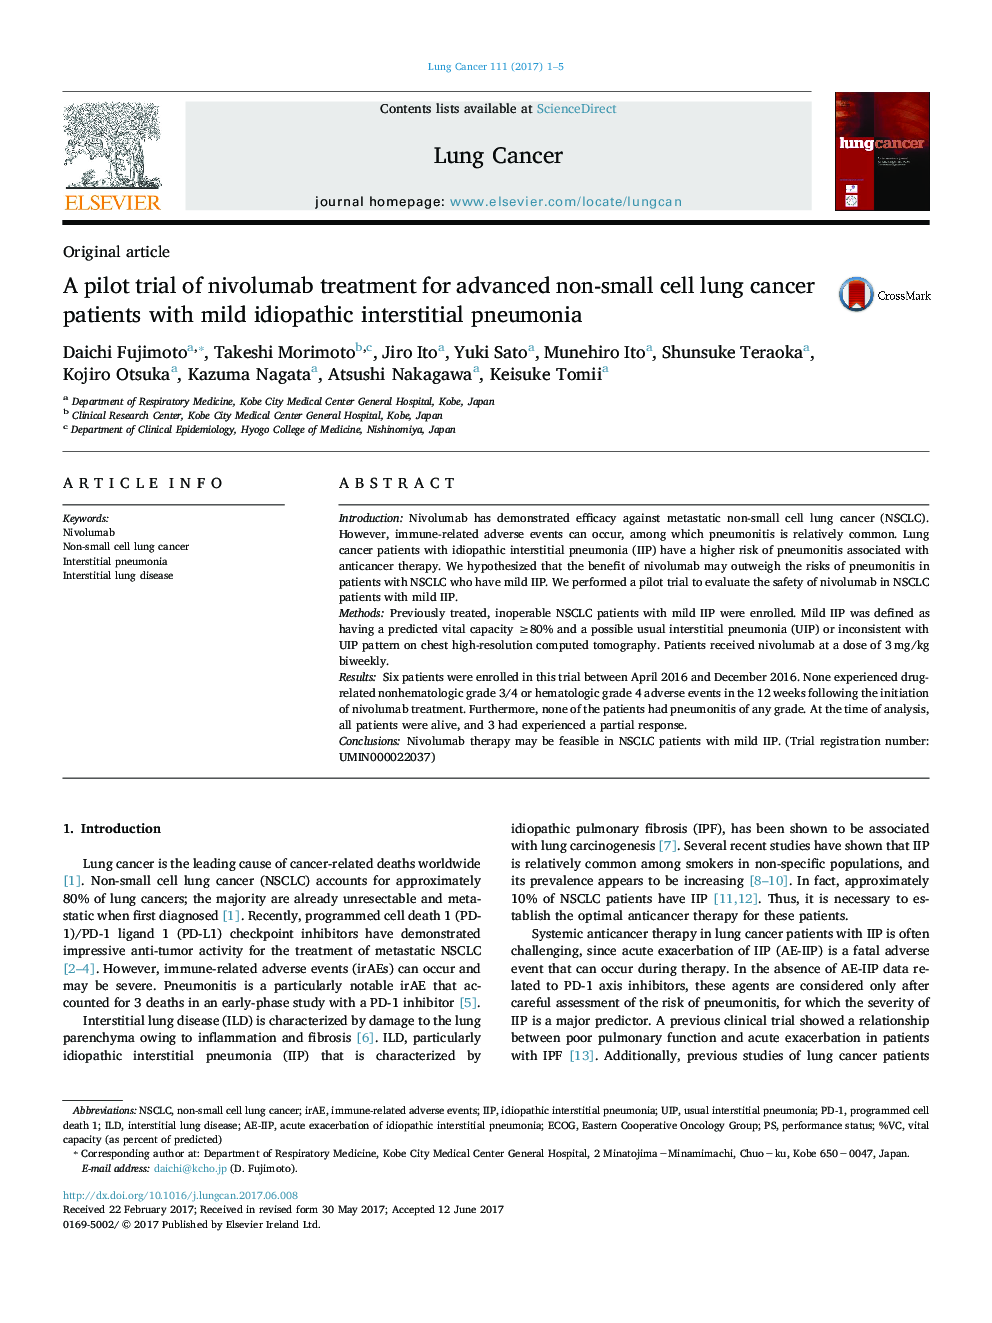 مقاله اصلی آزمایشی از درمان نیلواموب برای بیماران سرطانی پیشرفته غیر سلولی مبتلا به پنومونی بینابینی ایدئوپاتیک خفیف 